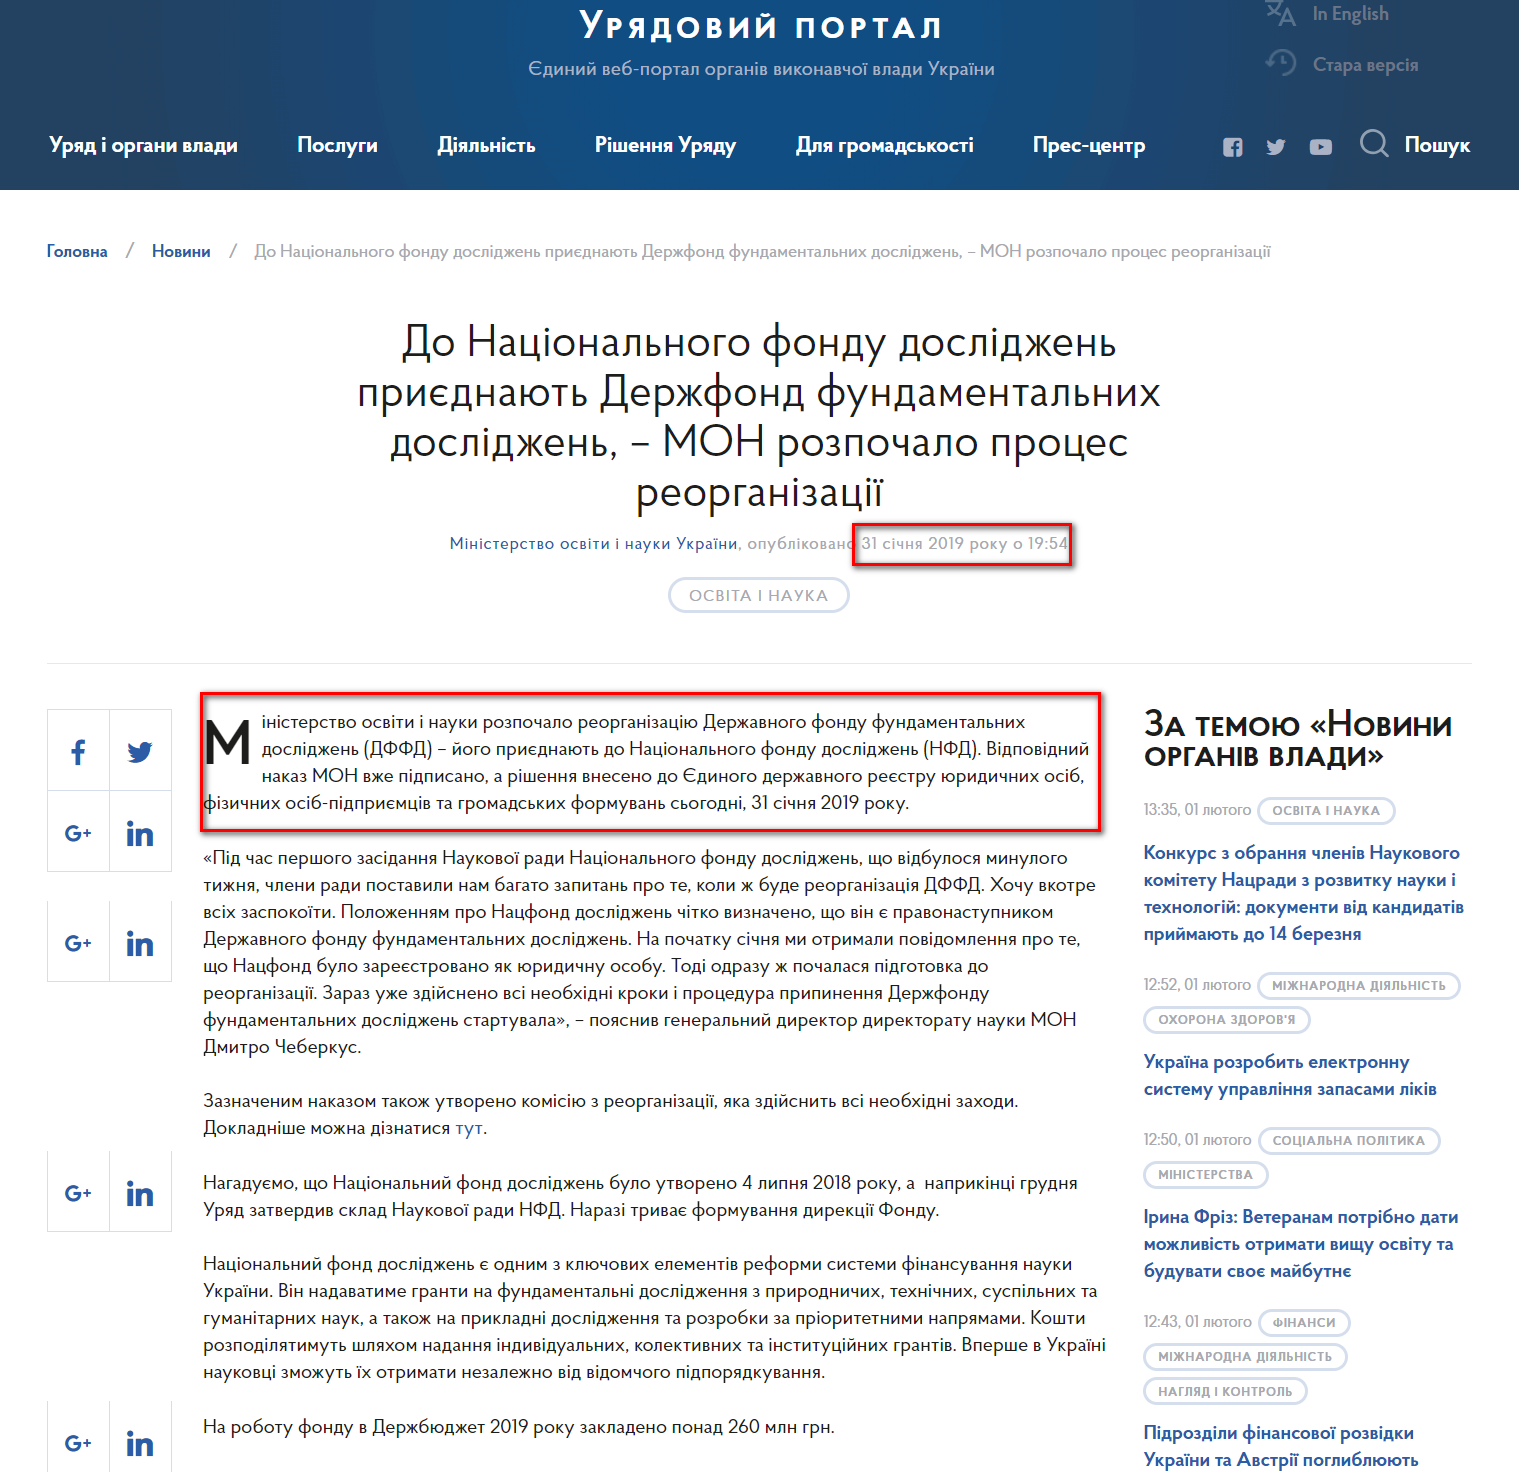 https://www.kmu.gov.ua/ua/news/do-nacionalnogo-fondu-doslidzhen-priyednayut-derzhfond-fundamentalnih-doslidzhen-mon-rozpochalo-proces-reorganizaciyi